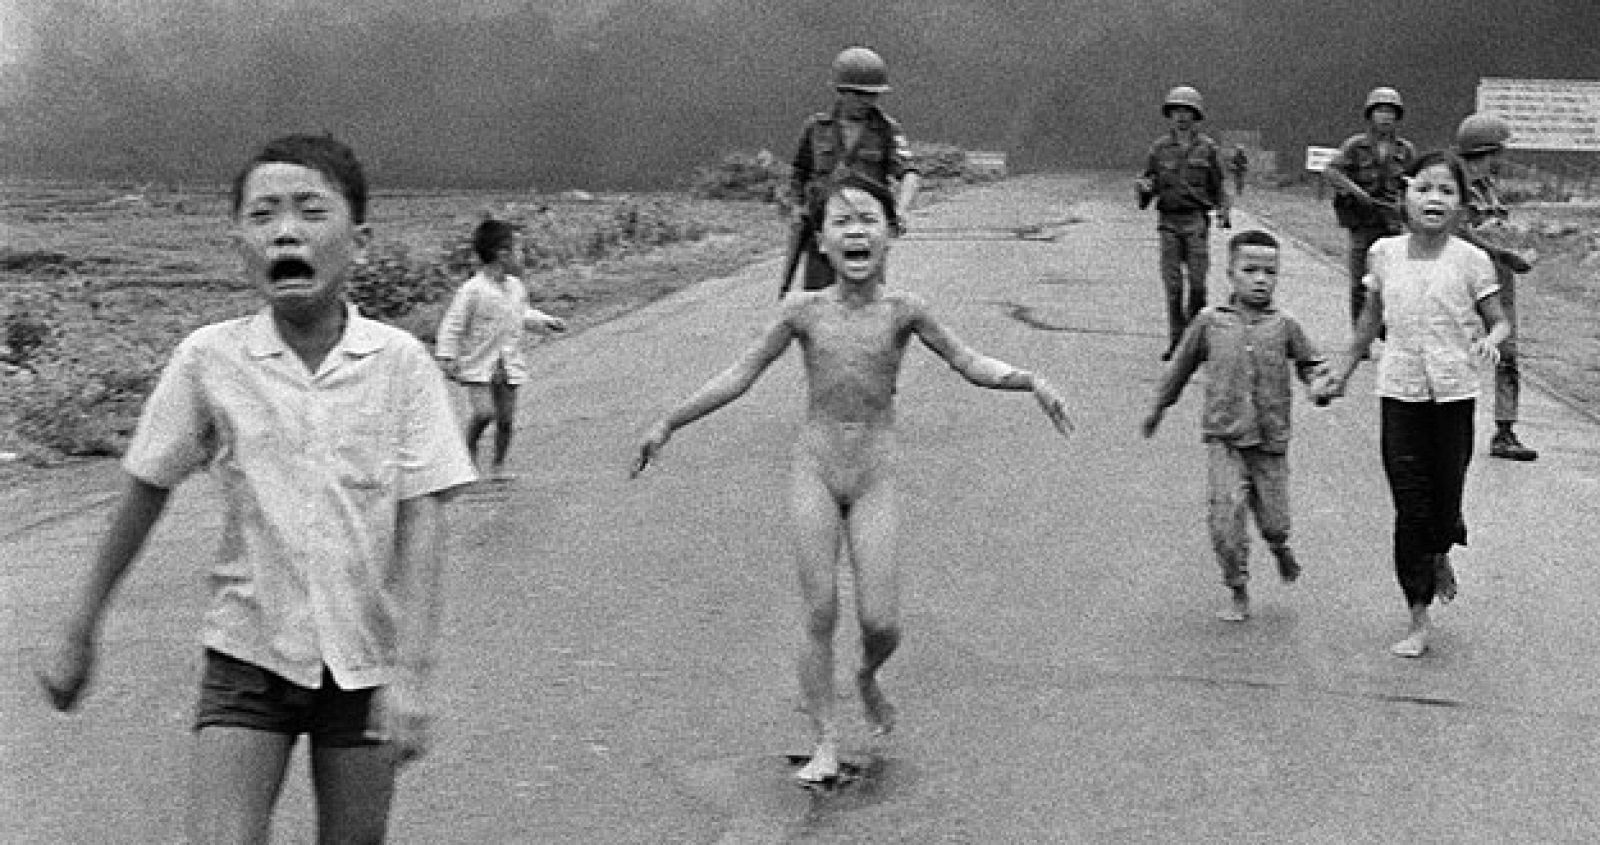 La foto que ganó el Pulizter y que inmortalizó a Kim Phuc, la niña que corría desesperada y desnuda abrasada por el napalm.